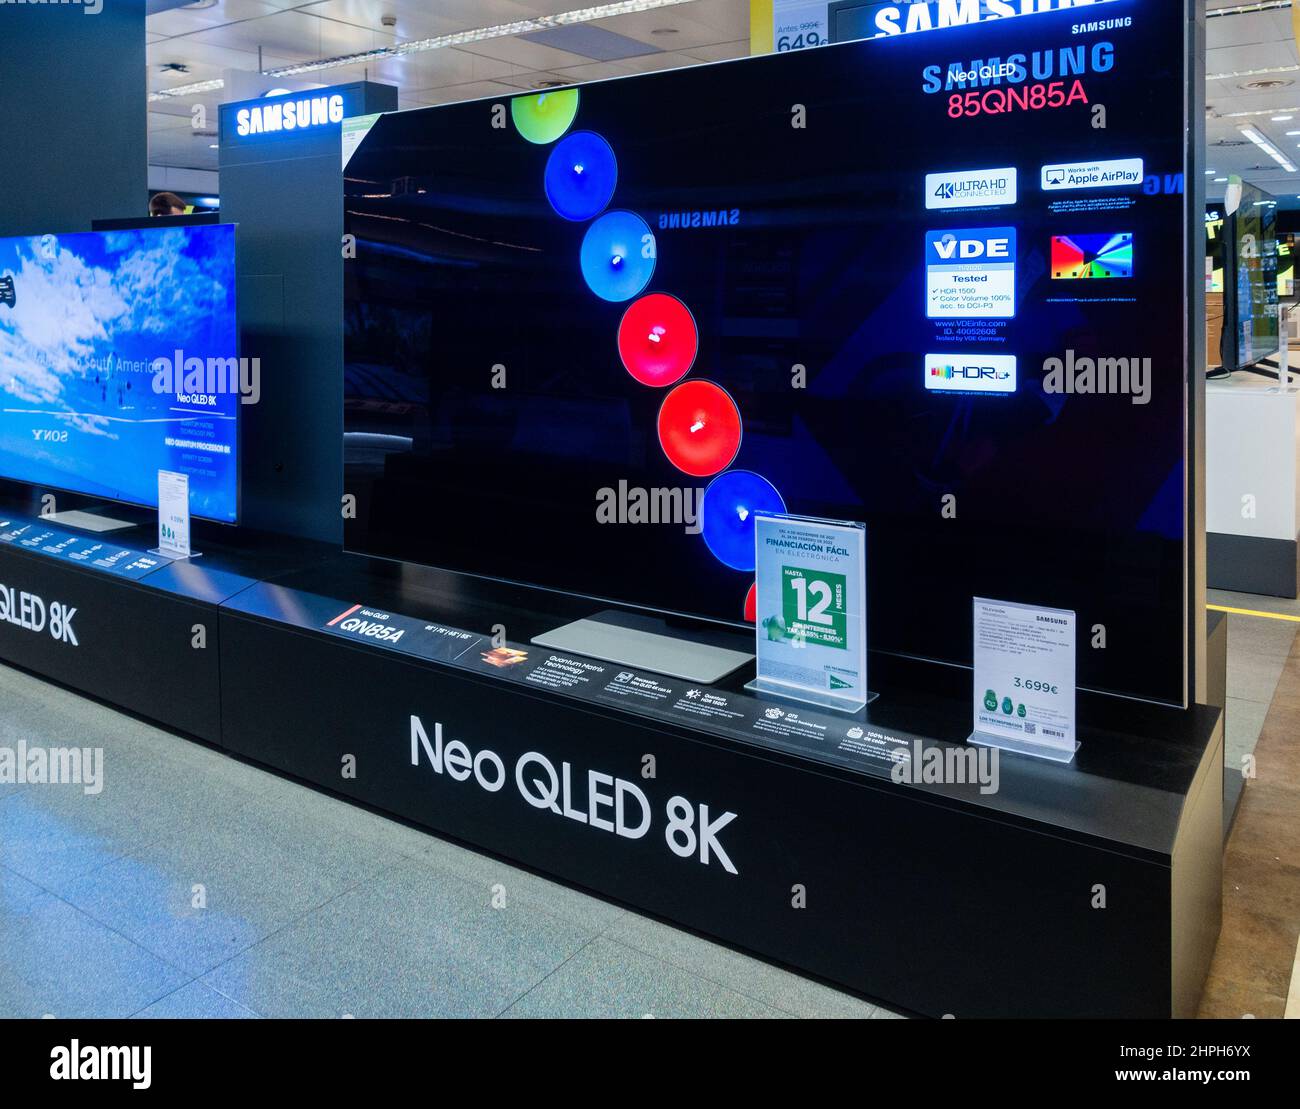 Televisor Samsung de alta definición Neo QLED 8K, pantalla de TV en tienda. Foto de stock